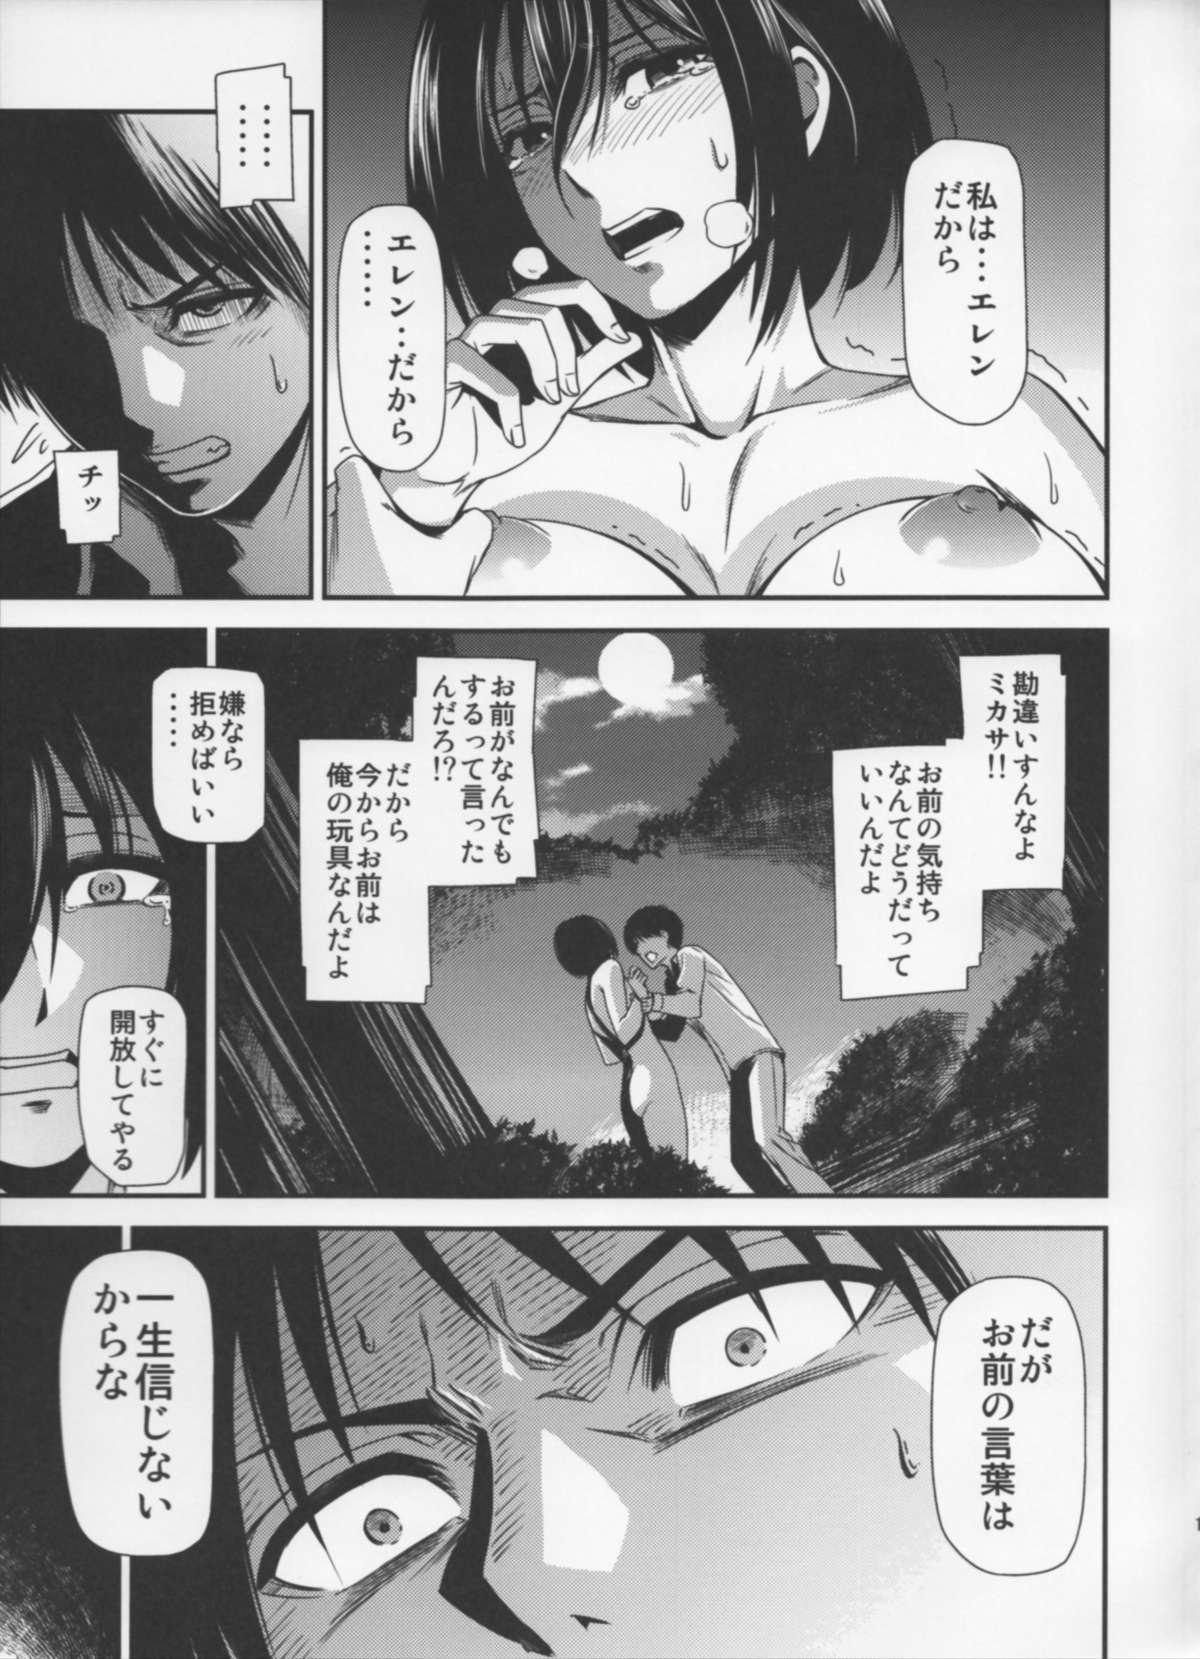 Comendo Gekishin Yon - Shingeki no kyojin Teenporn - Page 12